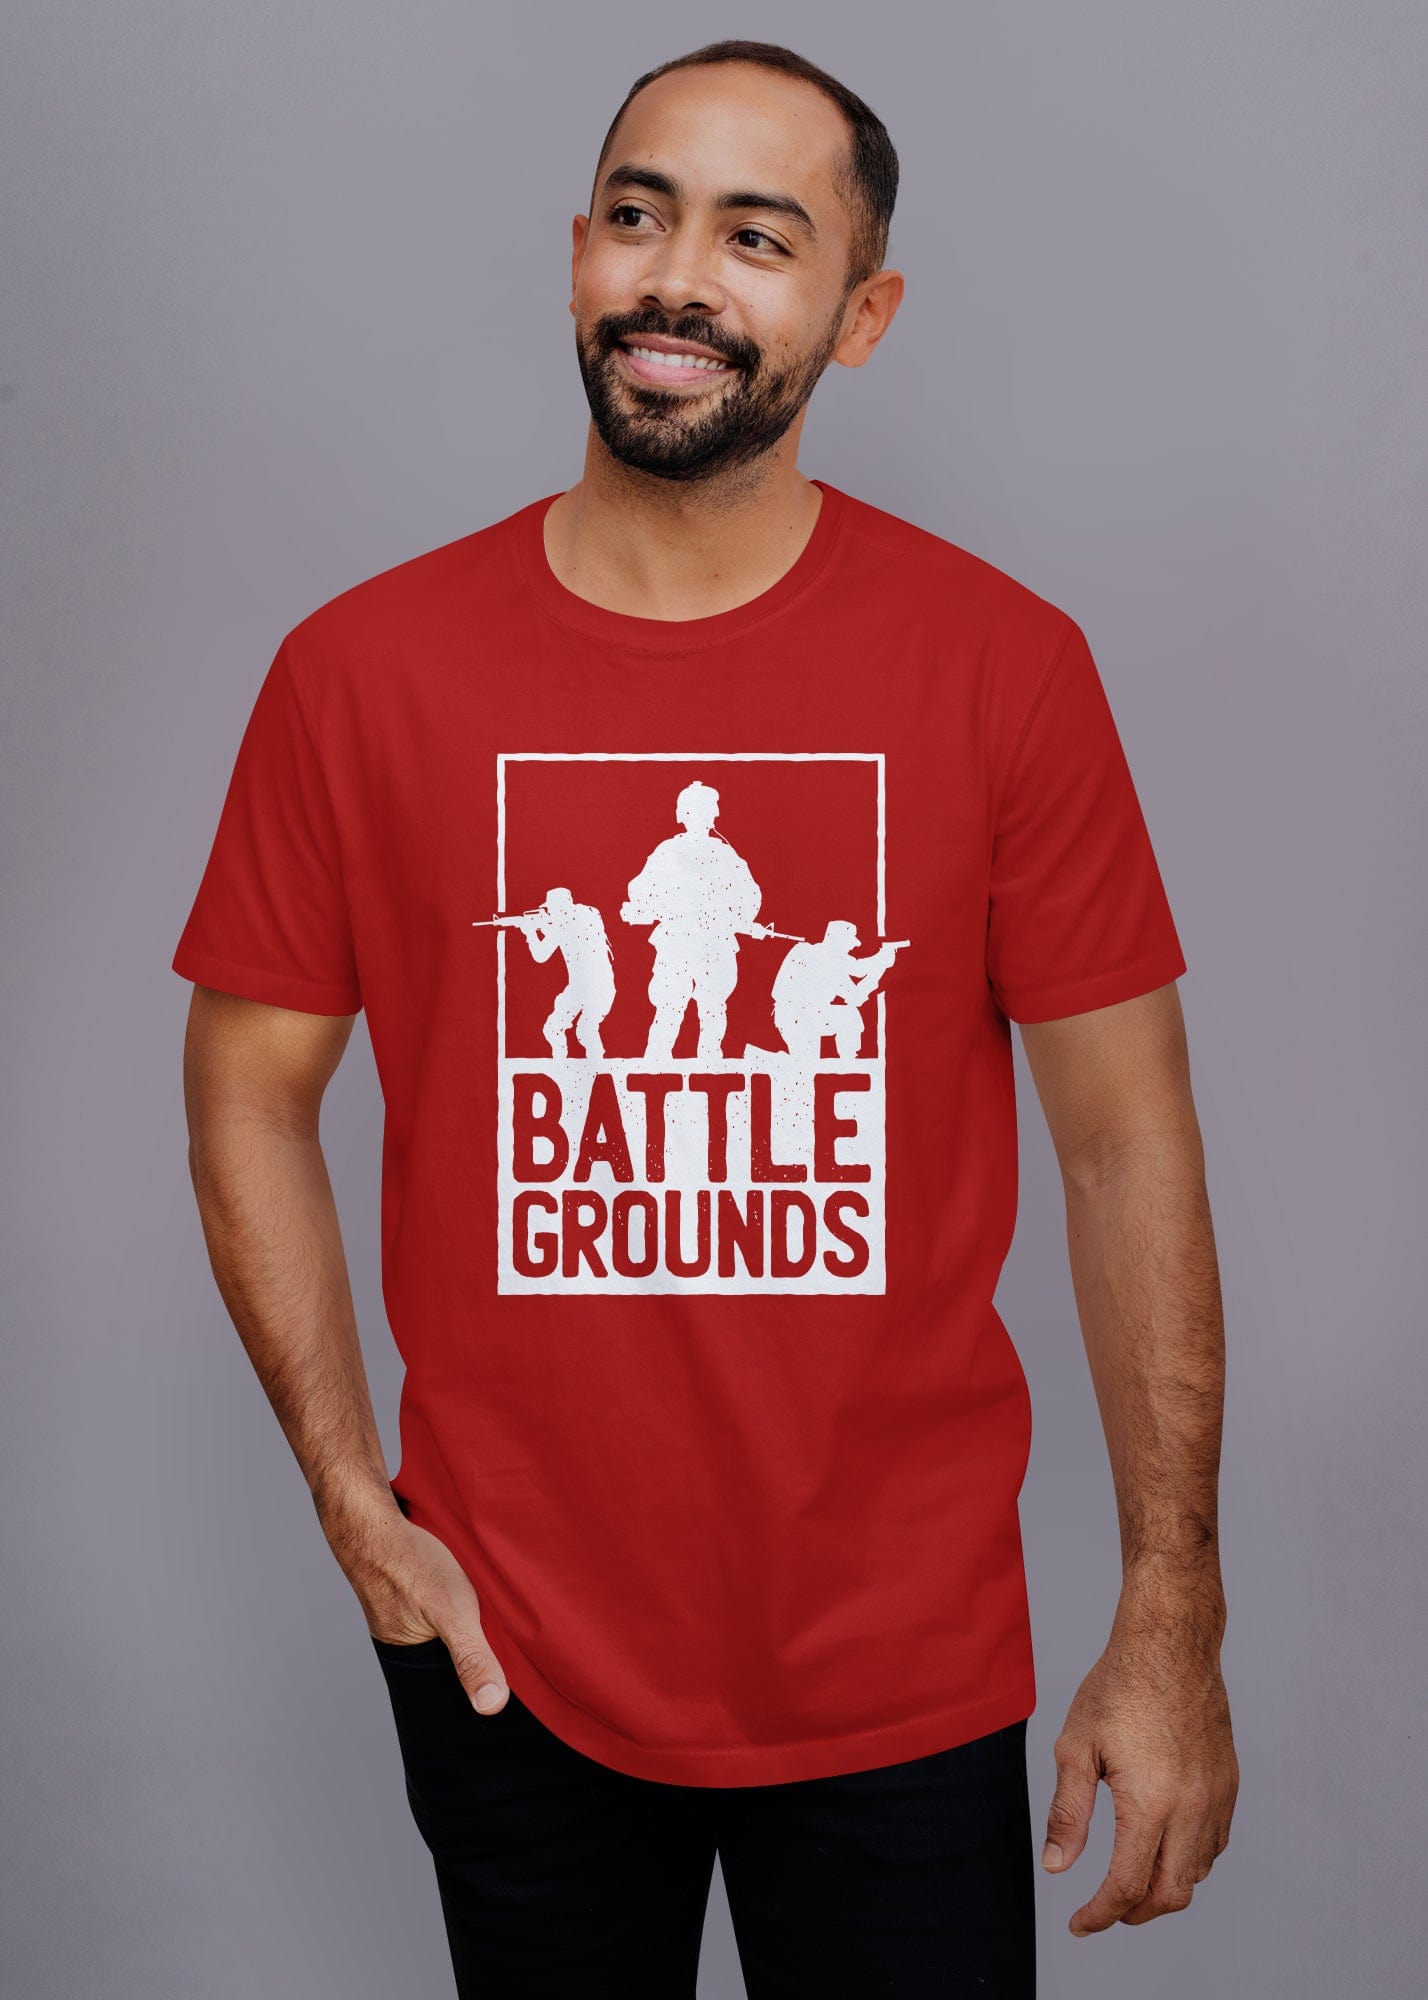 Battleground Printed Half Sleeve Premium Cotton T-shirt For Men